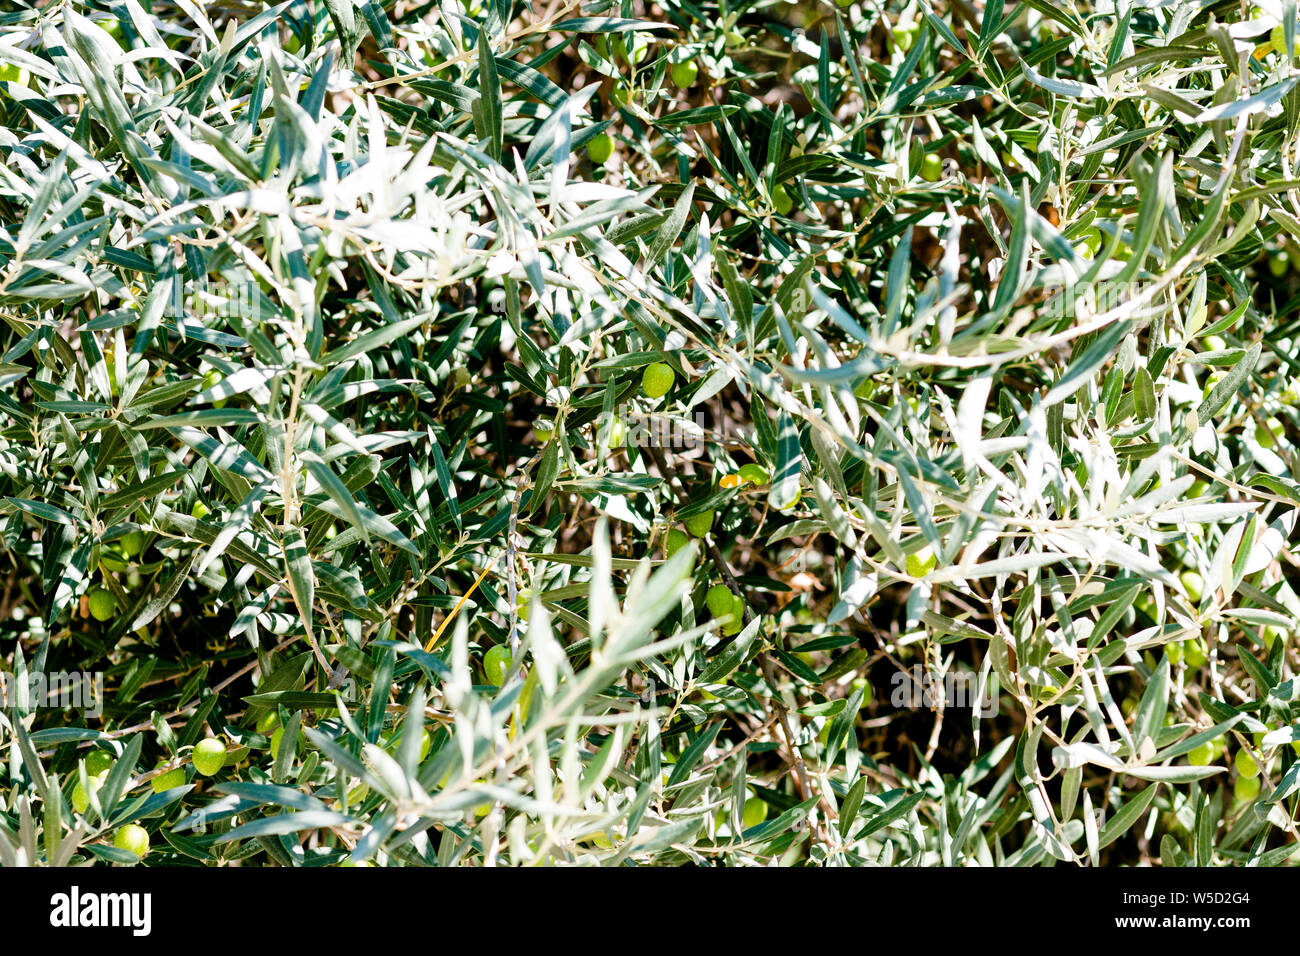 Deliciosos frutos del olivo. Las aceitunas son útiles para la fruta que crece en países con climas cálidos. Hacer aceite de oliva aceitunas. Foto de stock